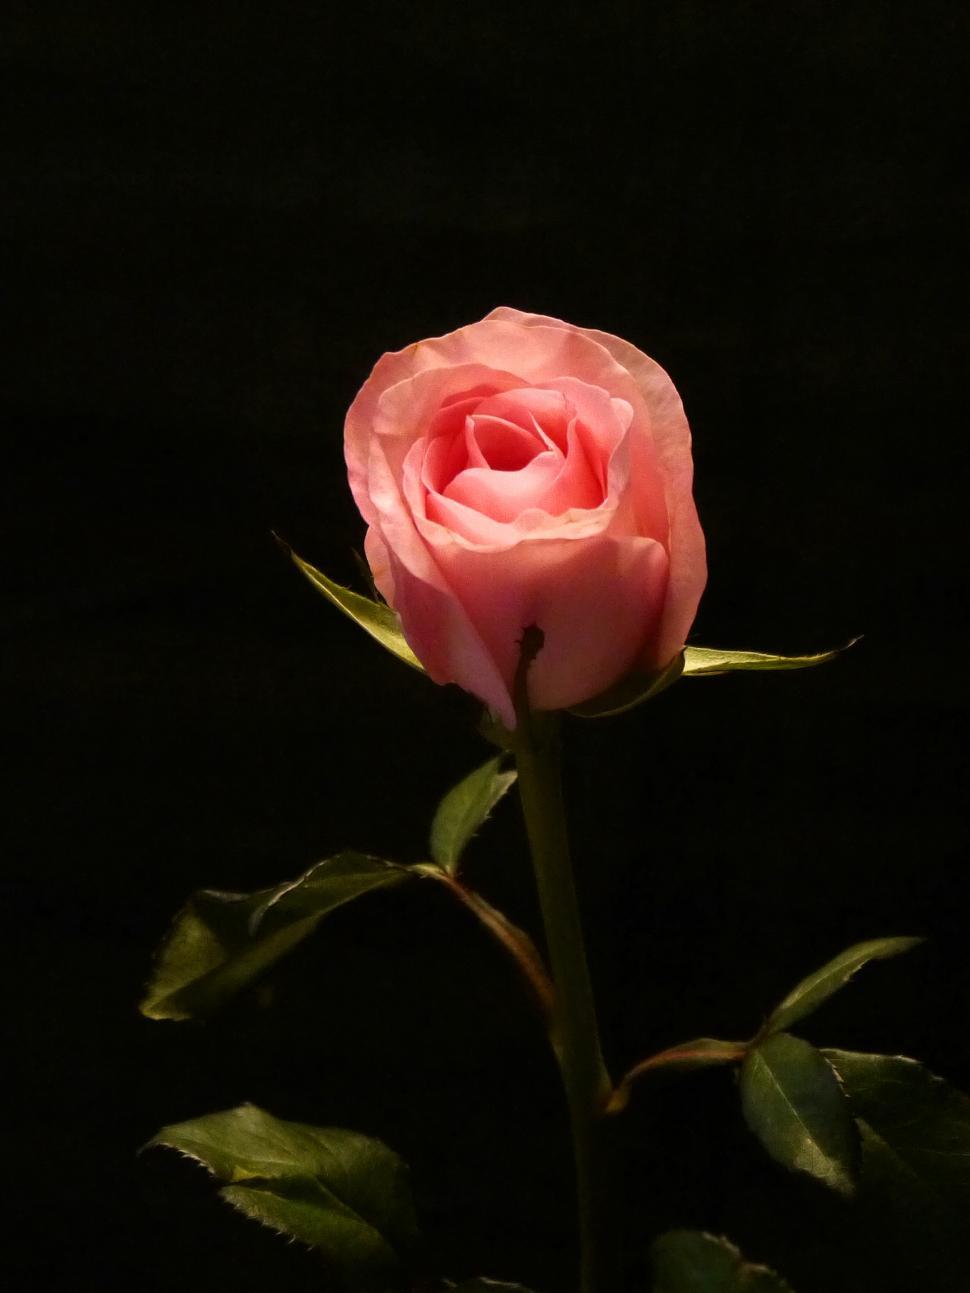 Free Image of Pink Rose Bud, Dark Background 